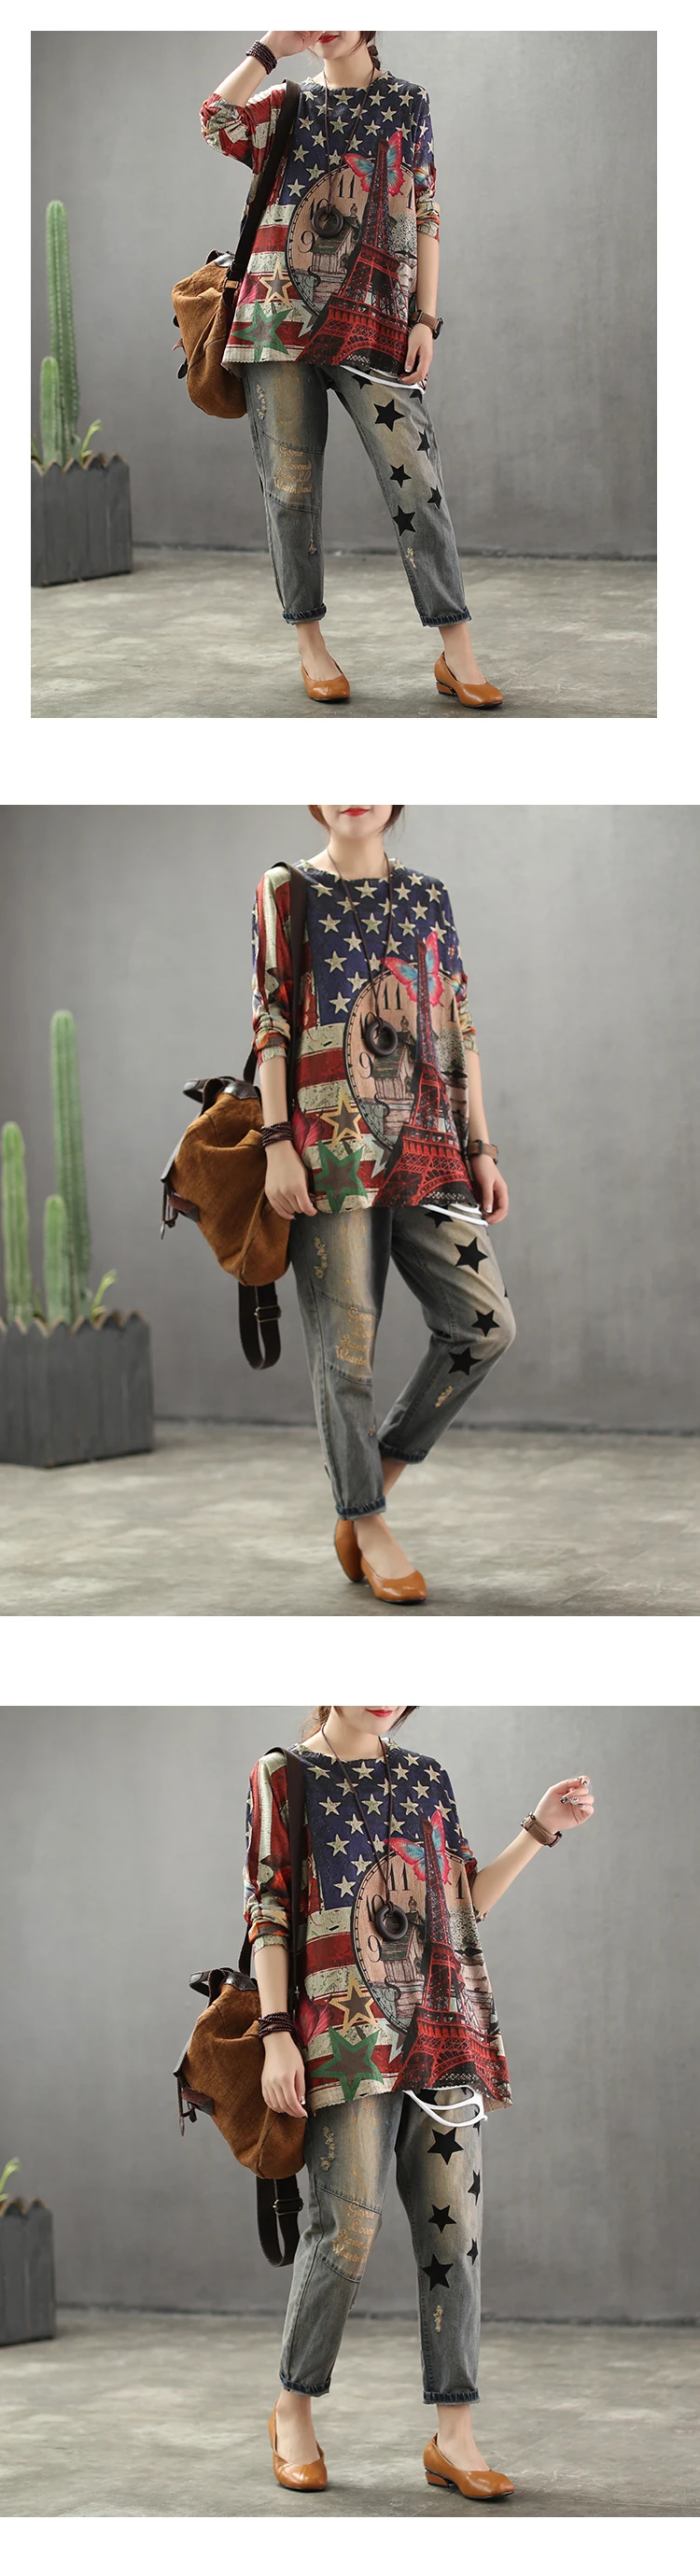 Женские модные брендовые винтажные рваные джинсы в Корейском стиле с вышивкой в виде звезд и букв, джинсовые штаны с эластичной резинкой на талии